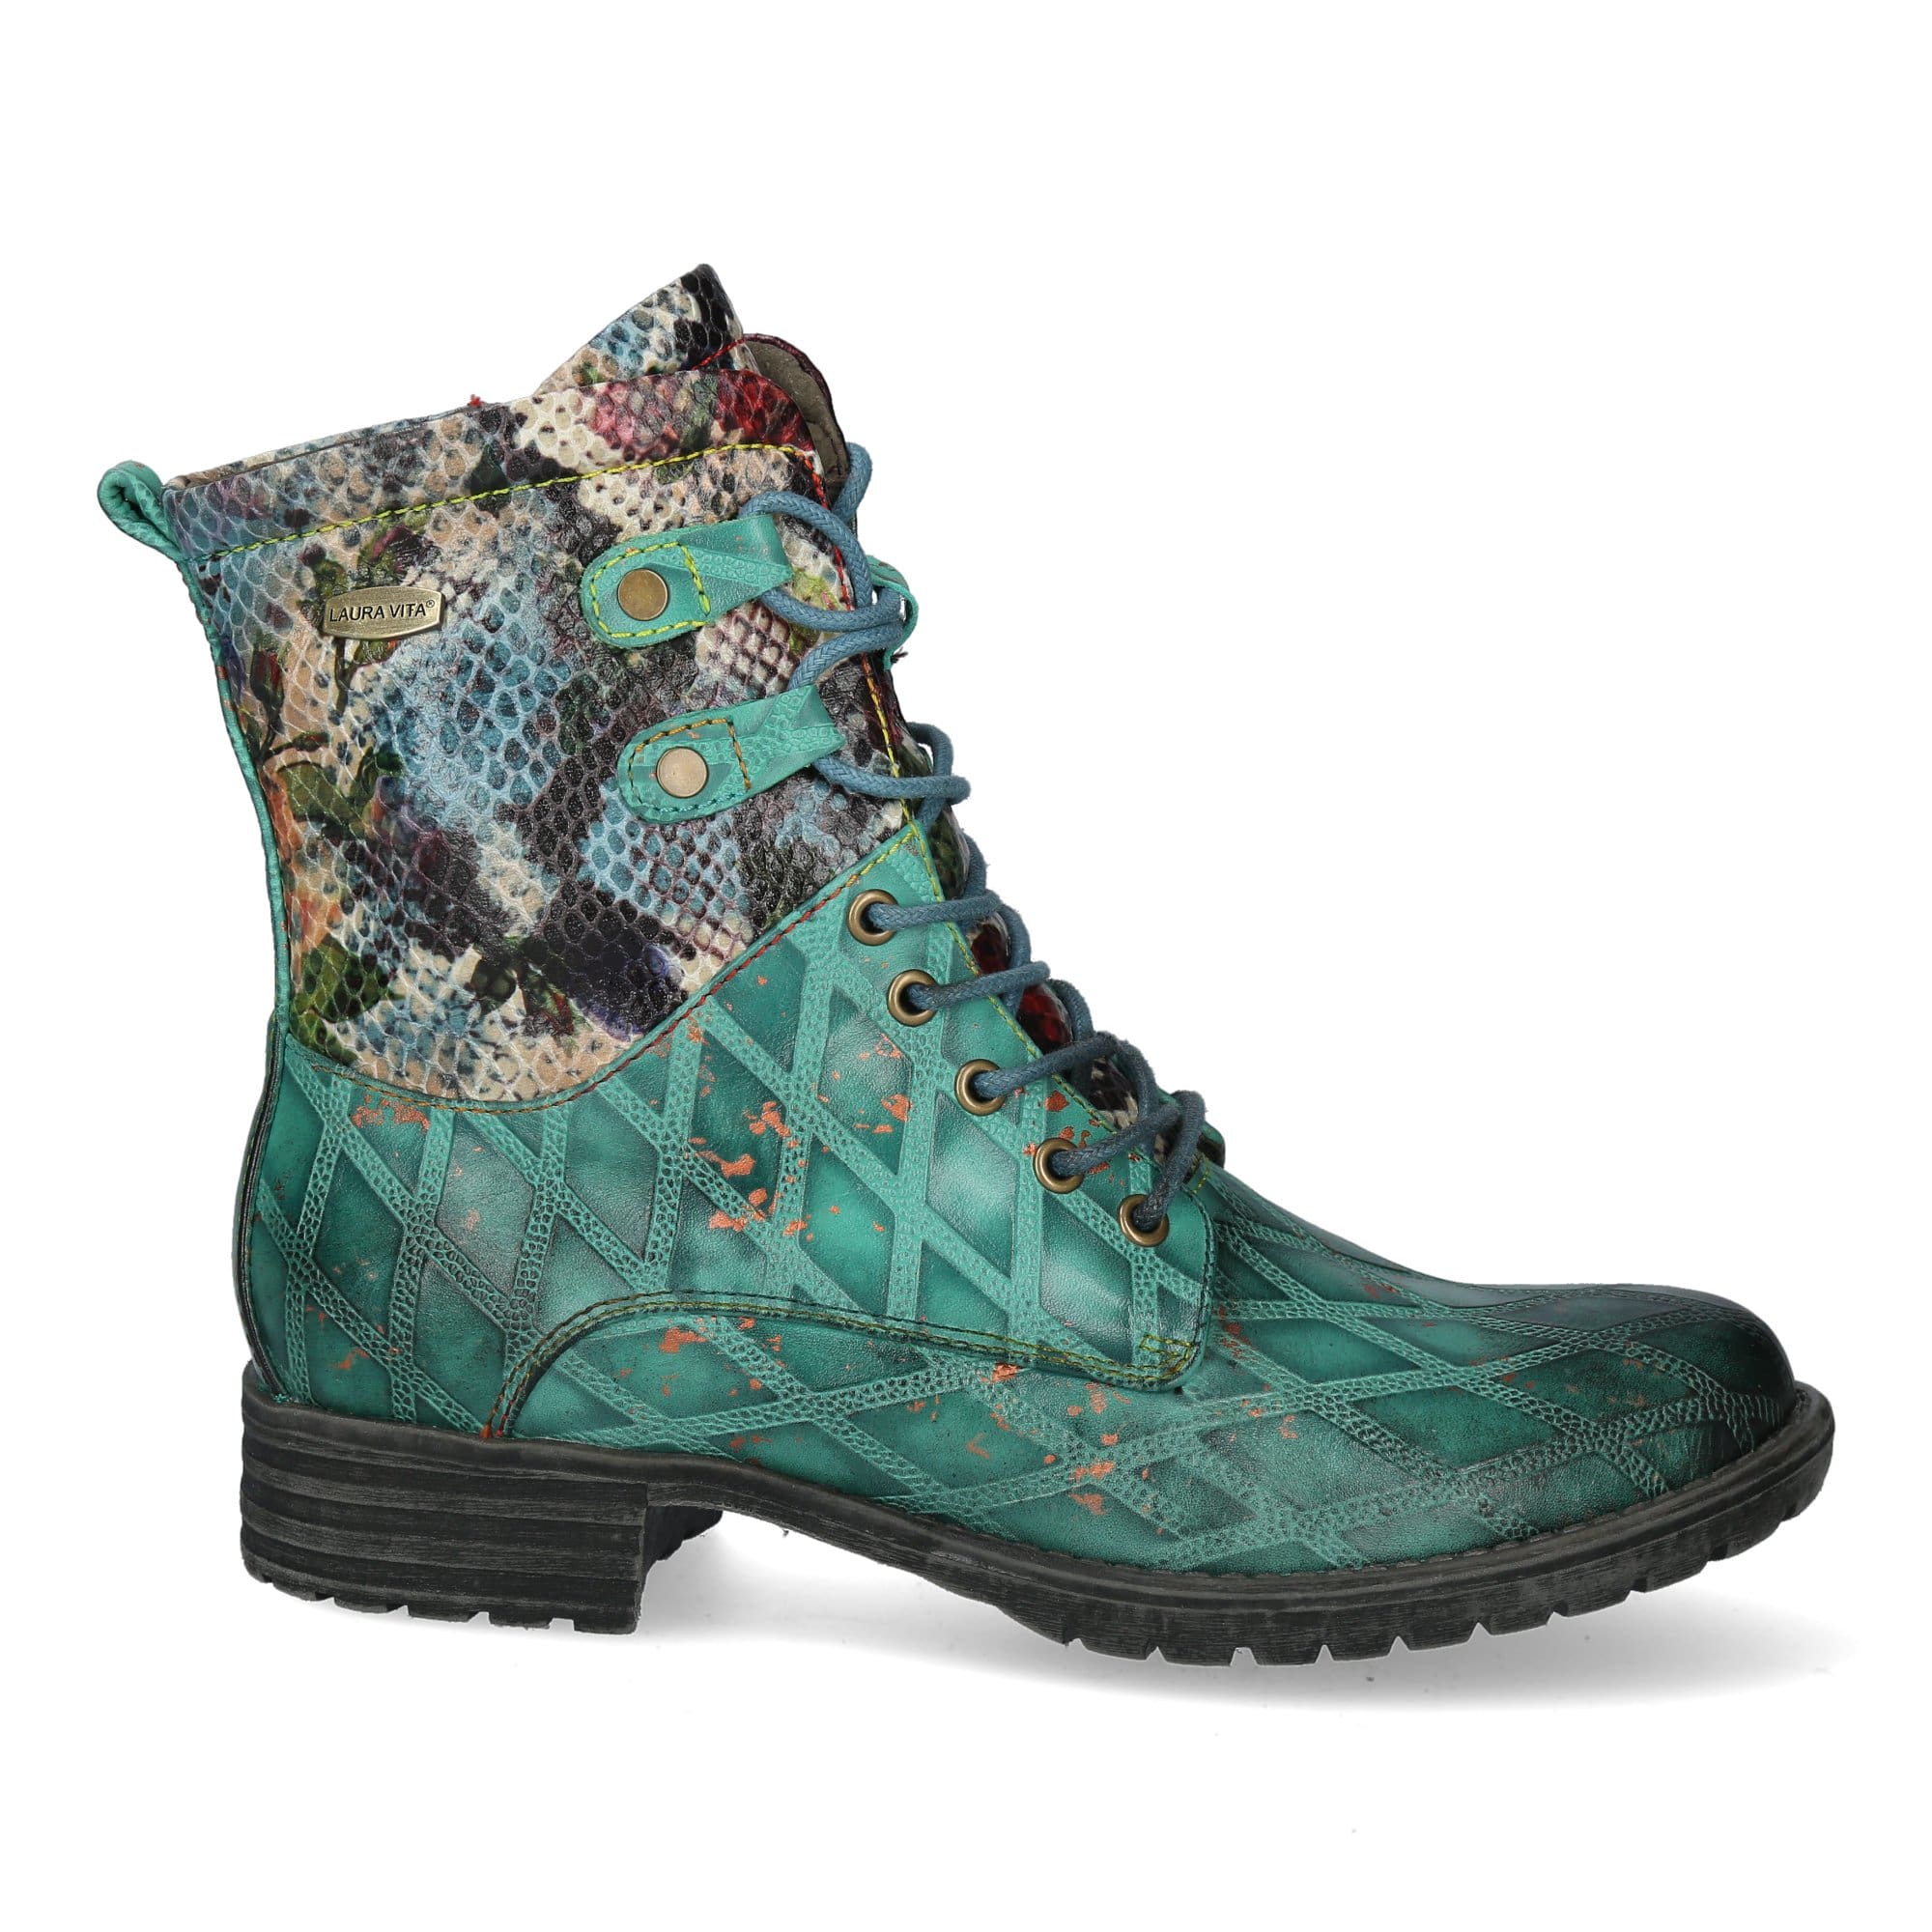 GACMAYO 217 - 35 / Turquoise - Boots